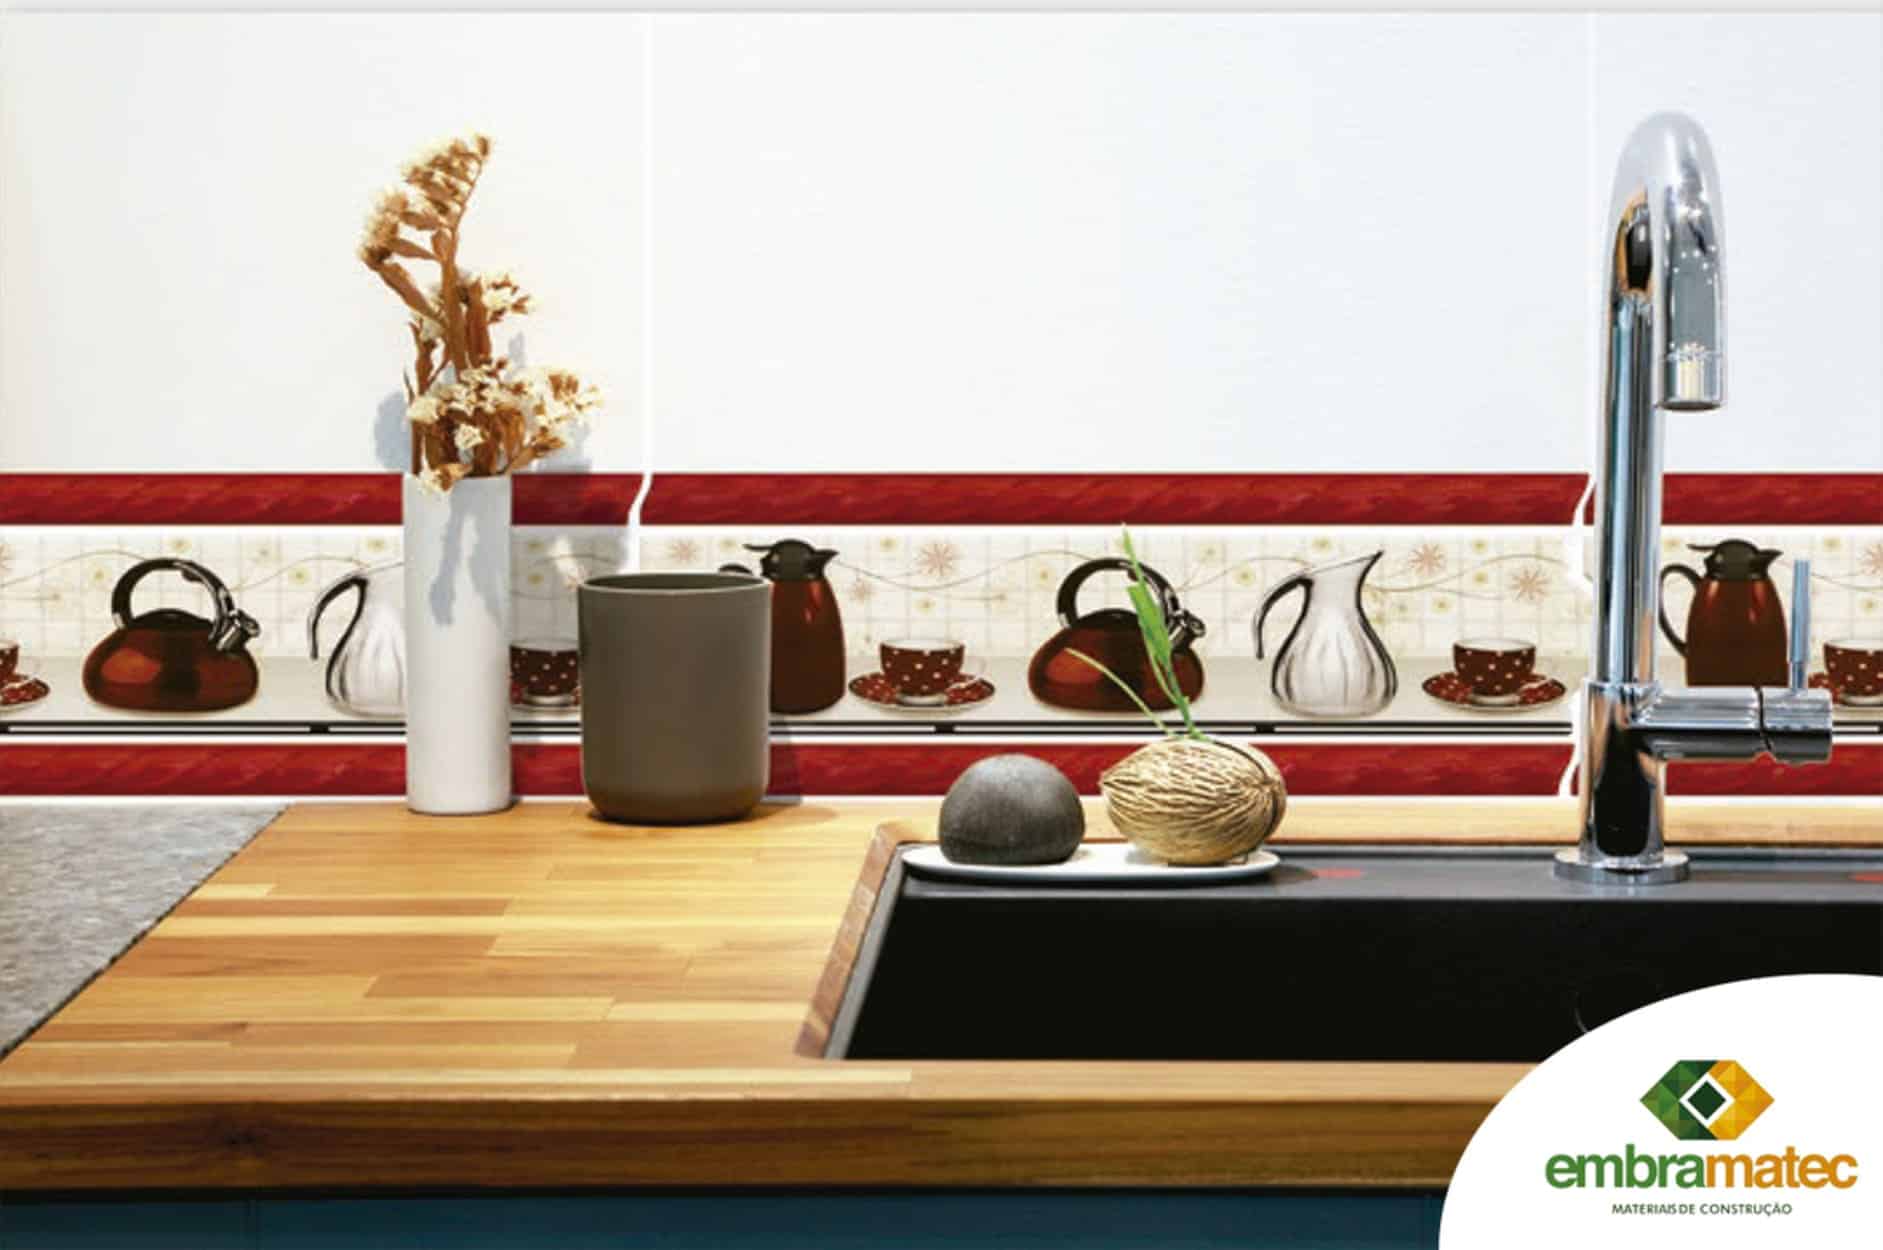 Faixa decorativa para cozinha: dicas +12 modelos inspiradores para destacar a decoração.